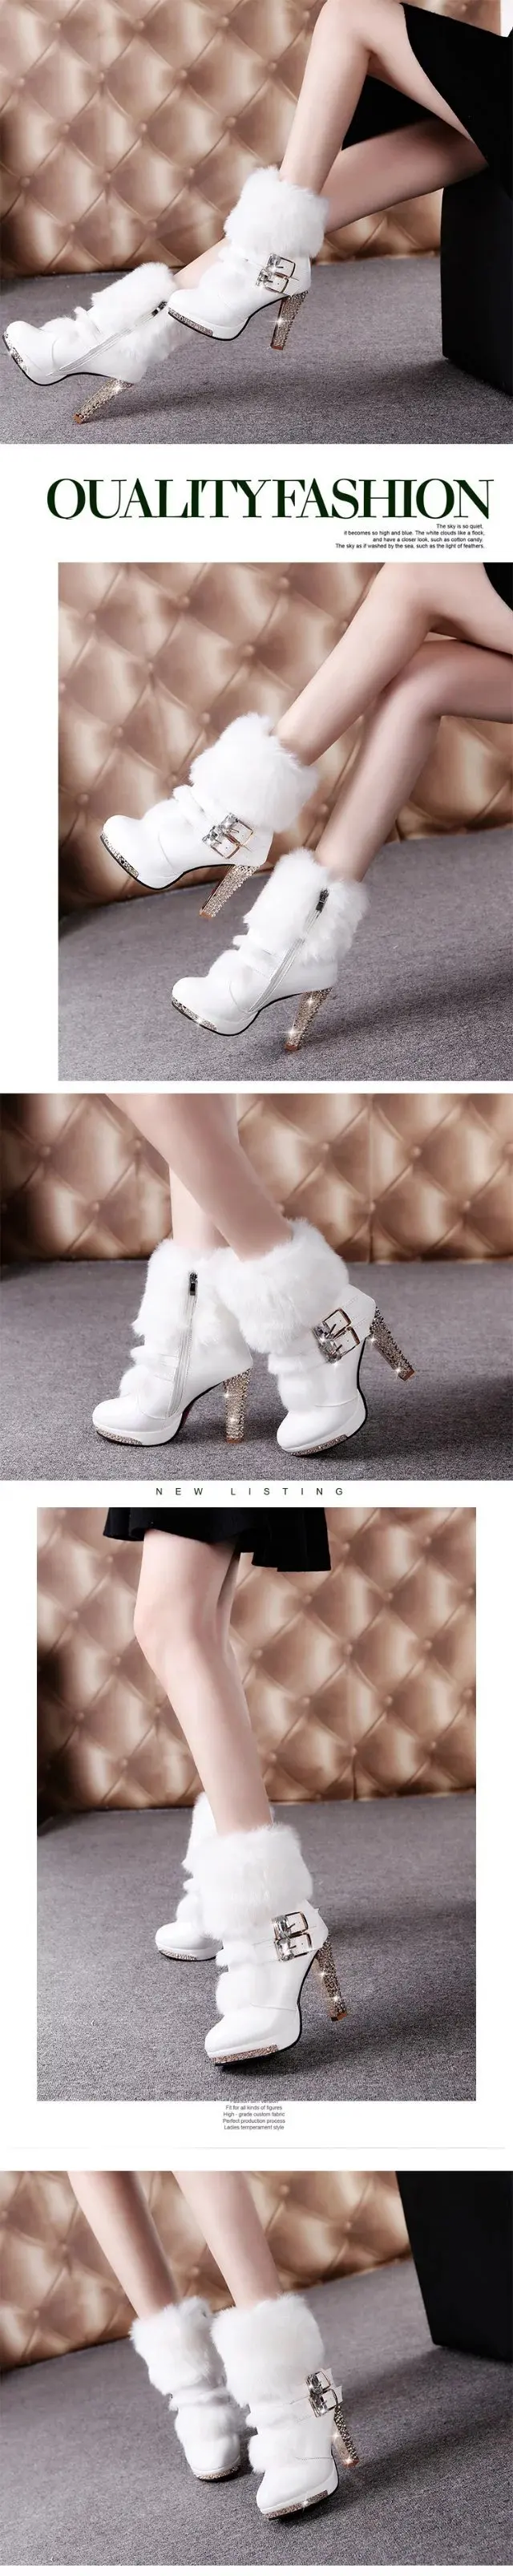 Новые зимние Ботинки martin женские ботинки на Высоком толстом каблуке, с мехом, со стразами зимние ботинки